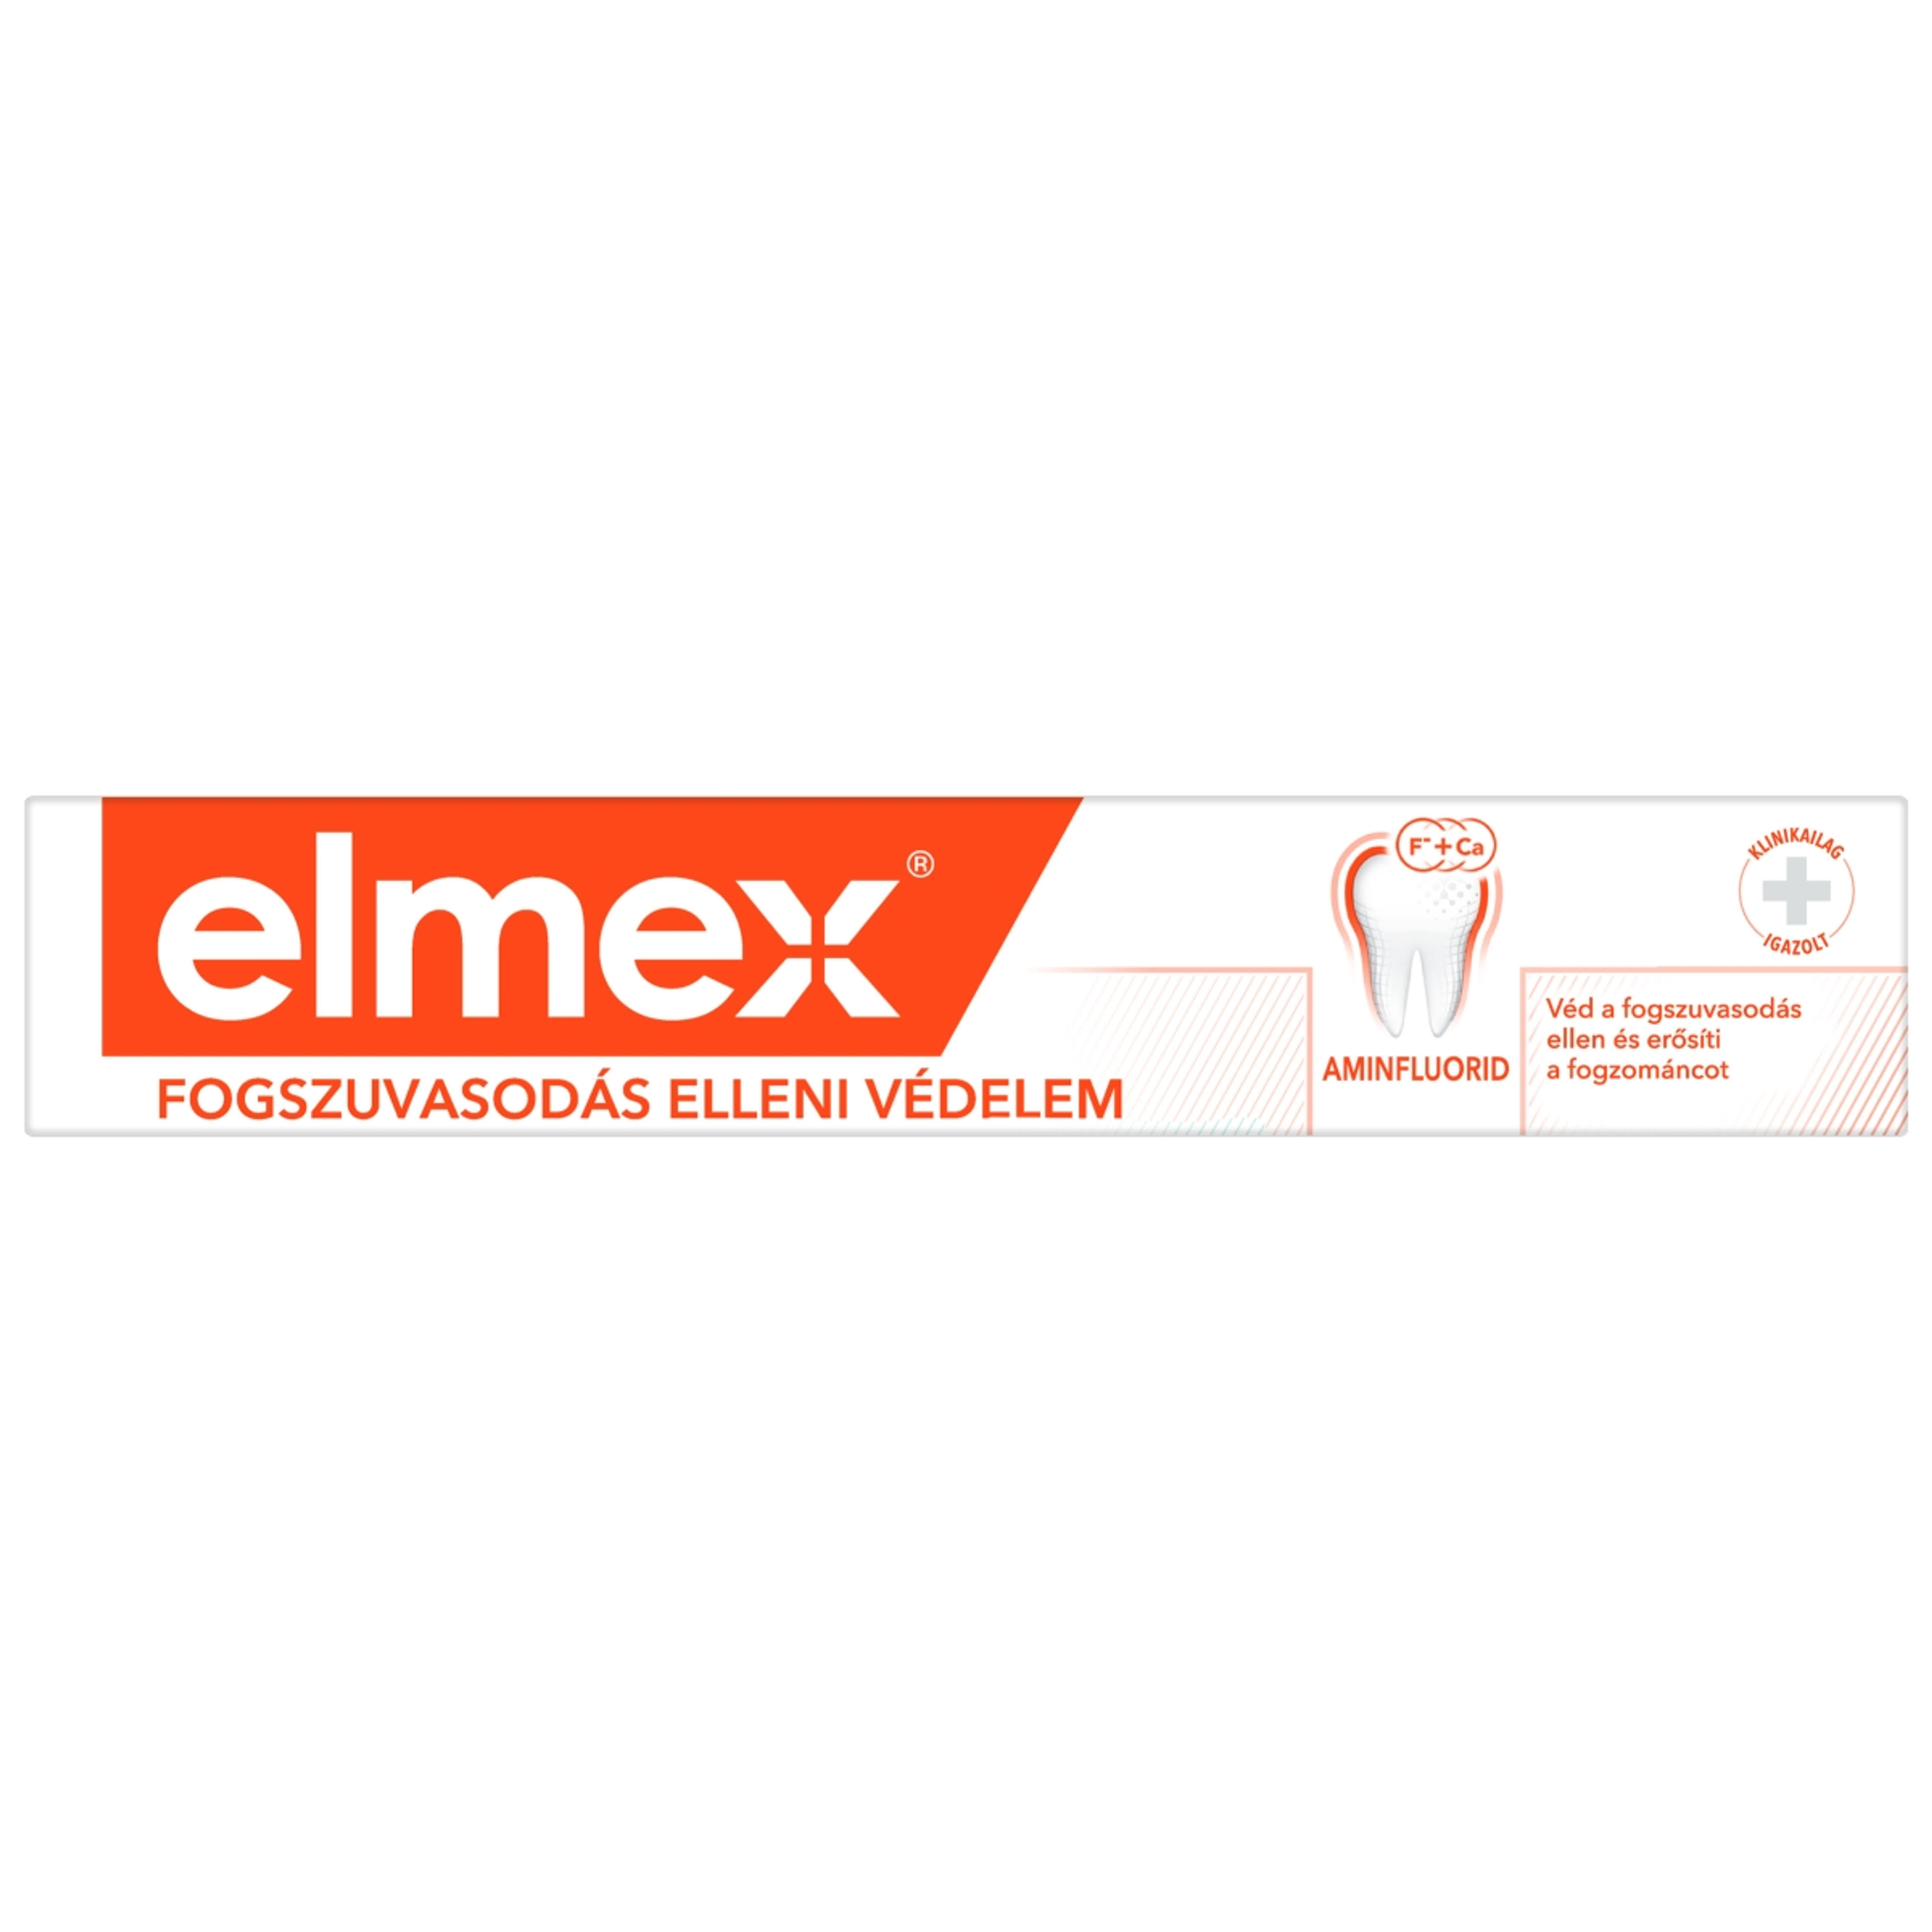 Elmex Caries Protection fogszuvasodás elleni fogkrém aminfluoriddal - 75 ml